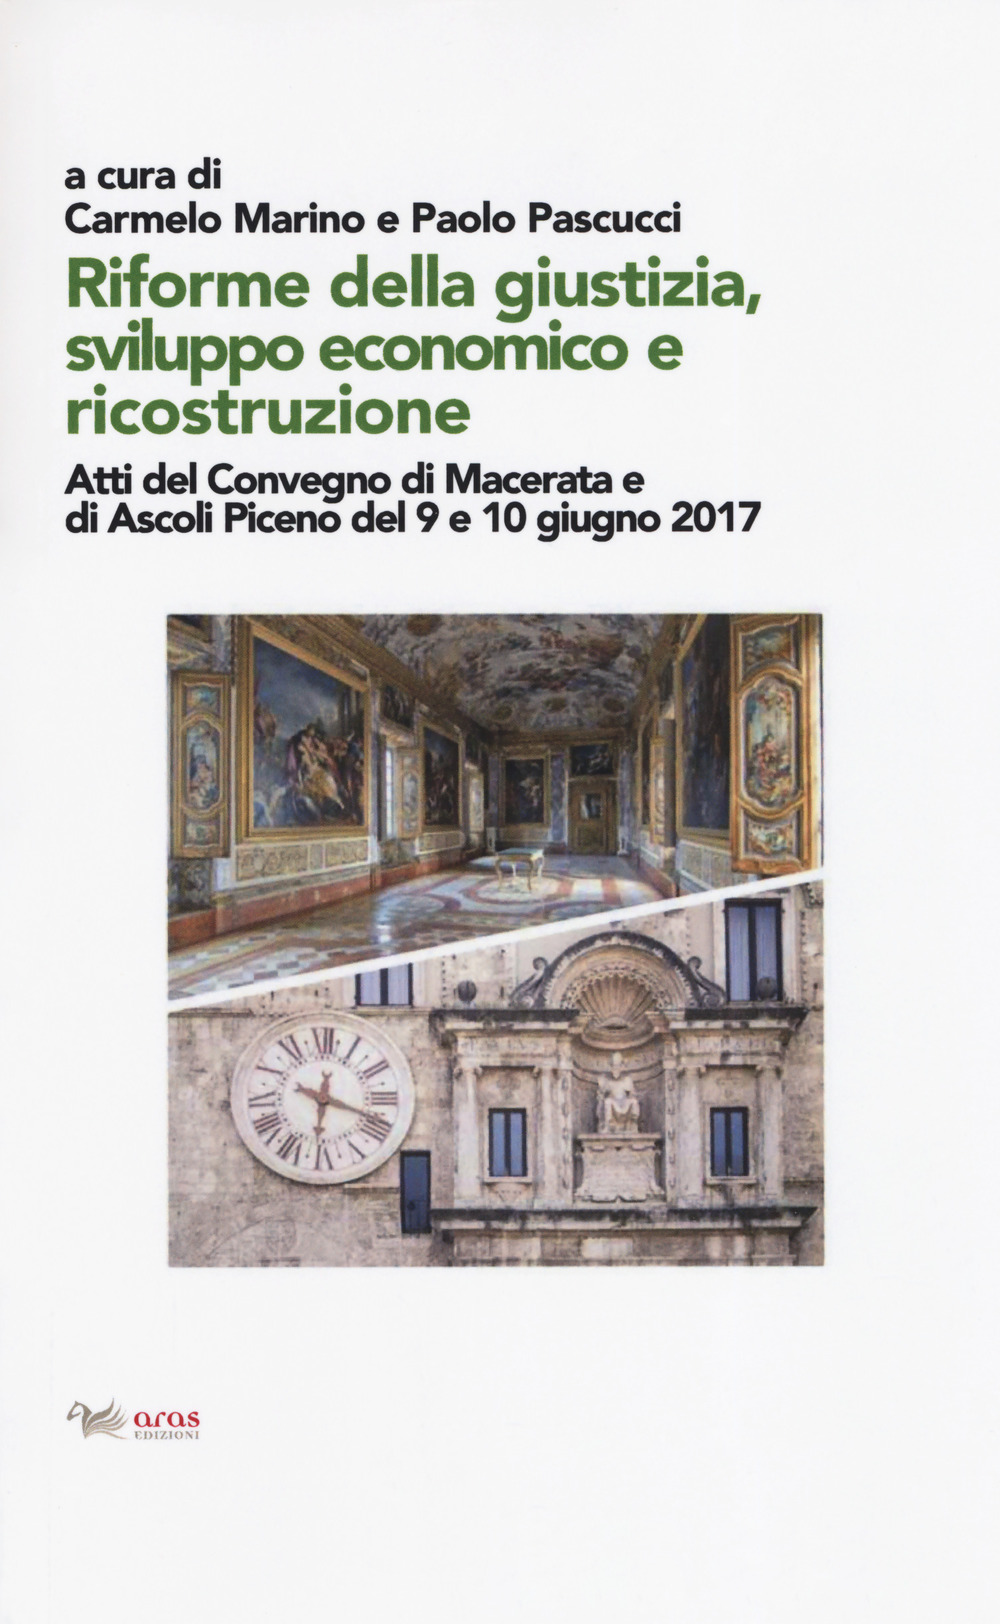 Riforme della giustizia, sviluppo economico e ricostruzione. Atti del Convegno (Macerata e Ascoli Piceno, 9-10 giugno 2019)